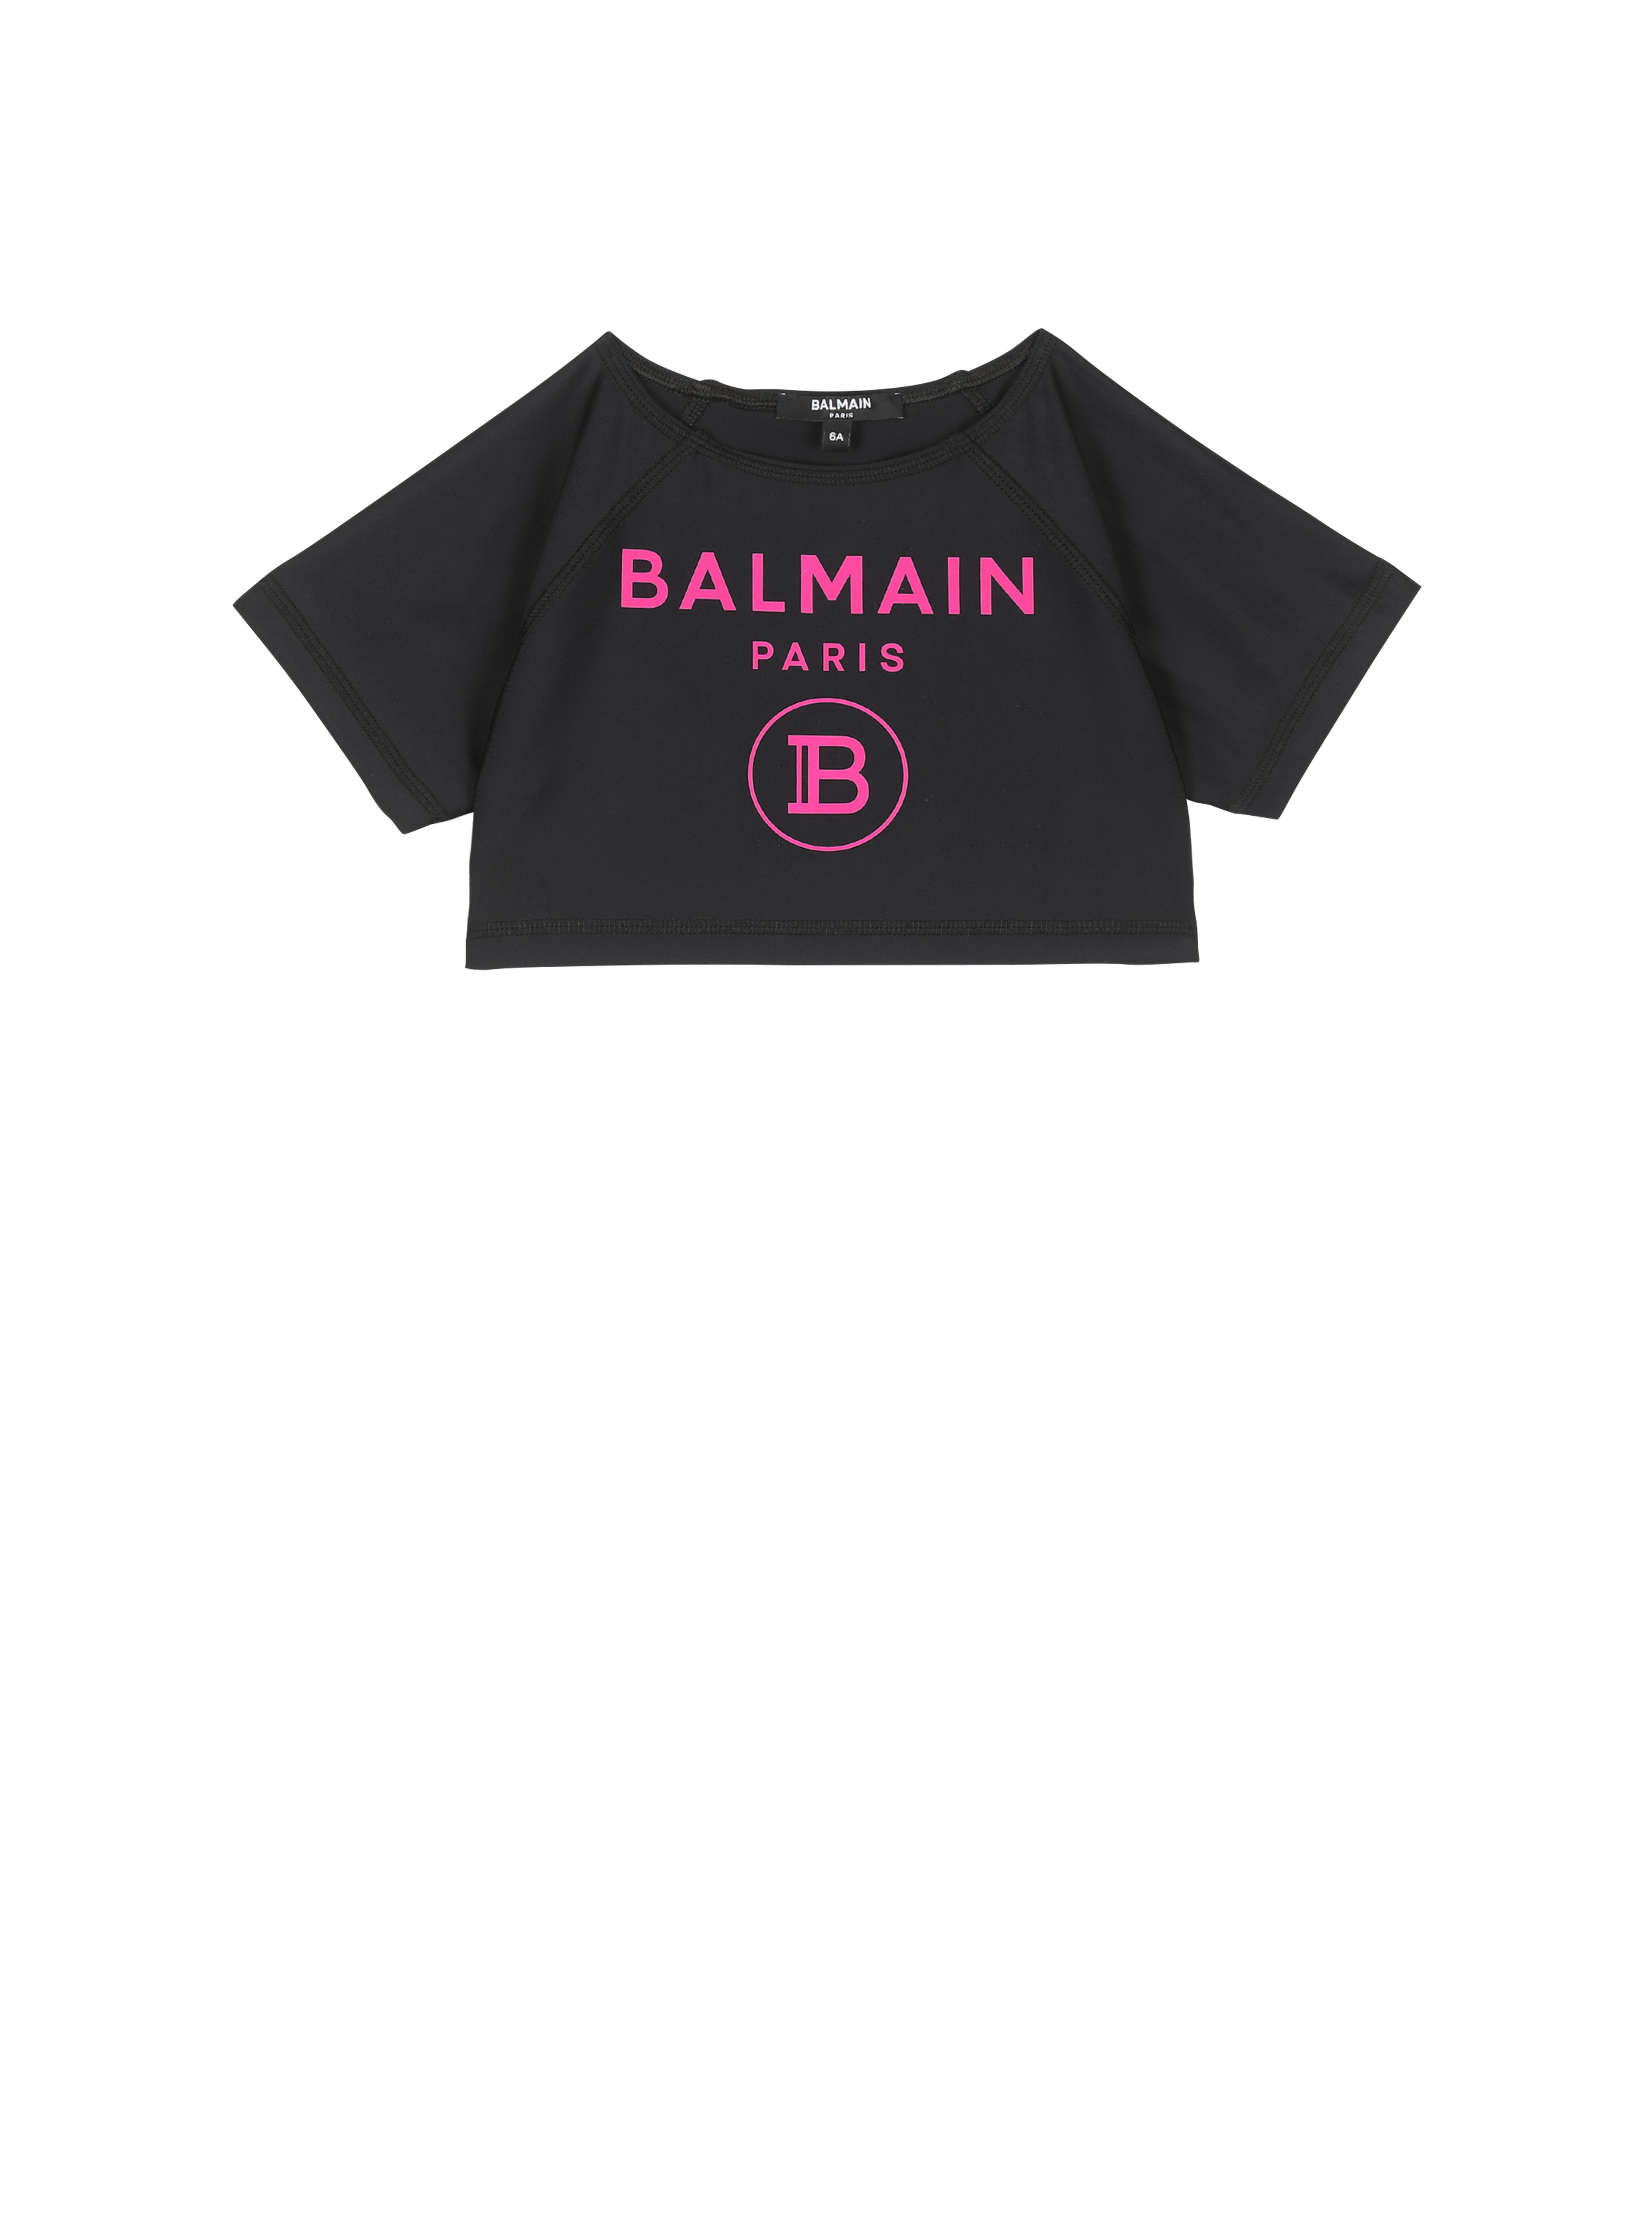 Balmain logo swim T-shirt, black